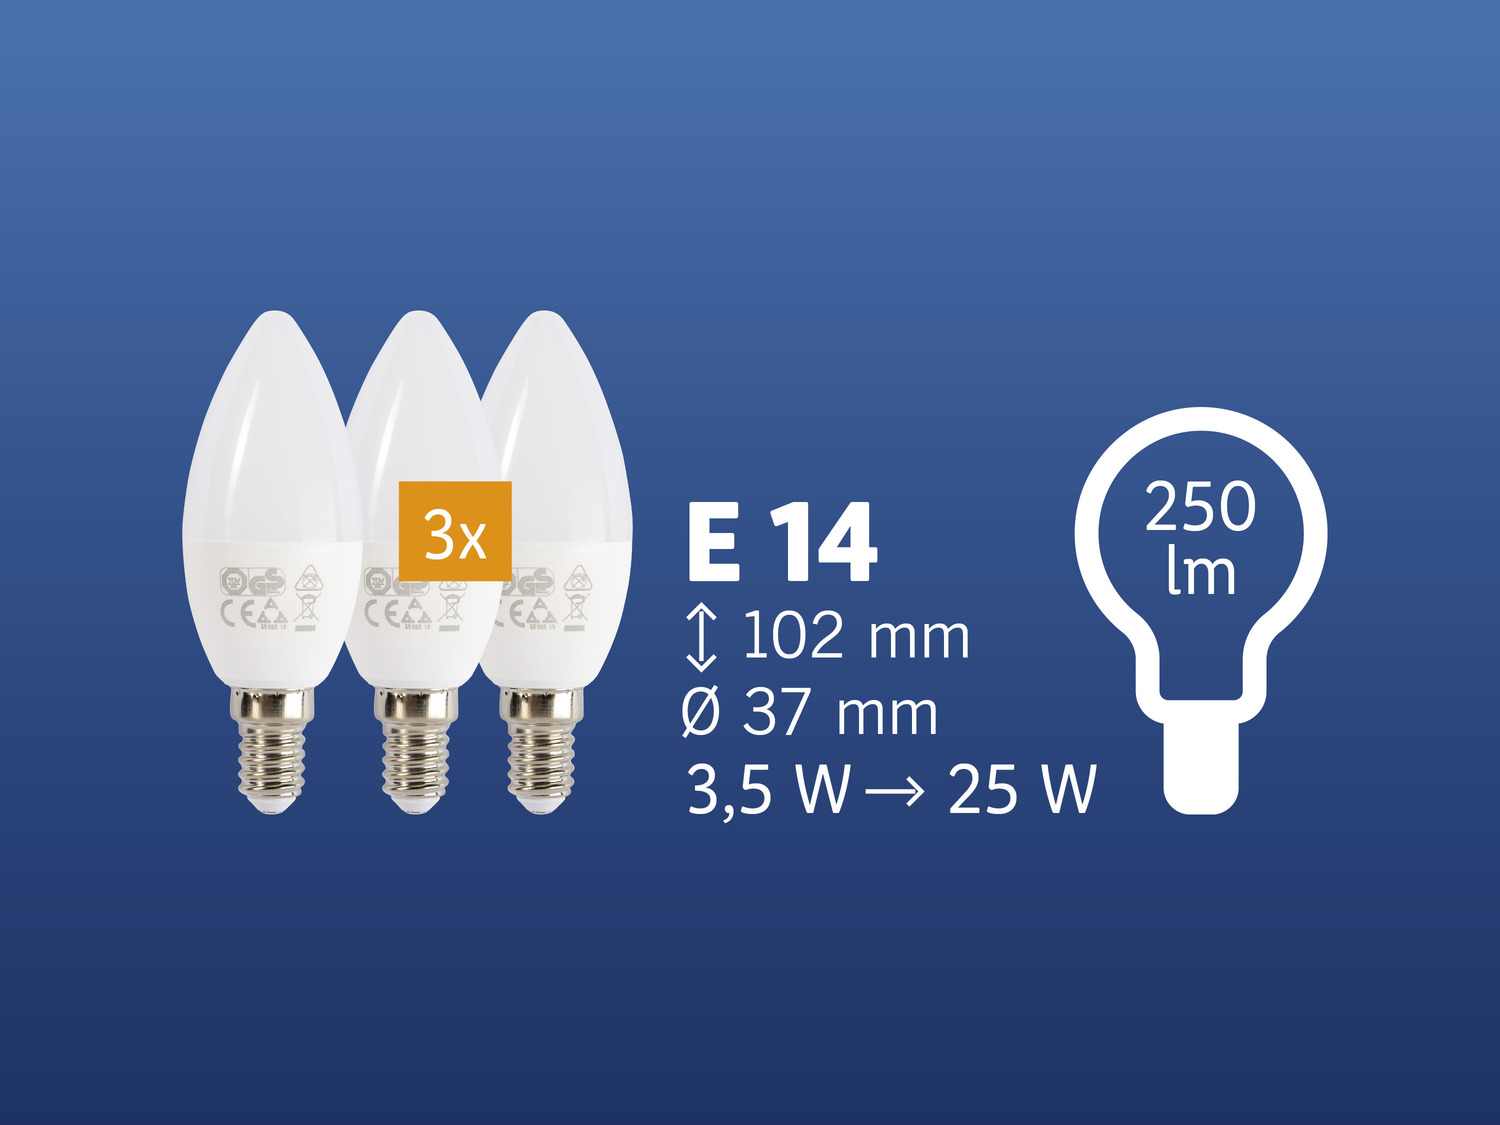 Żarówki LED, 3 szt. Livarno Lux, cena 11,99 PLN 
- klasa energetyczna A+
- ilość ...